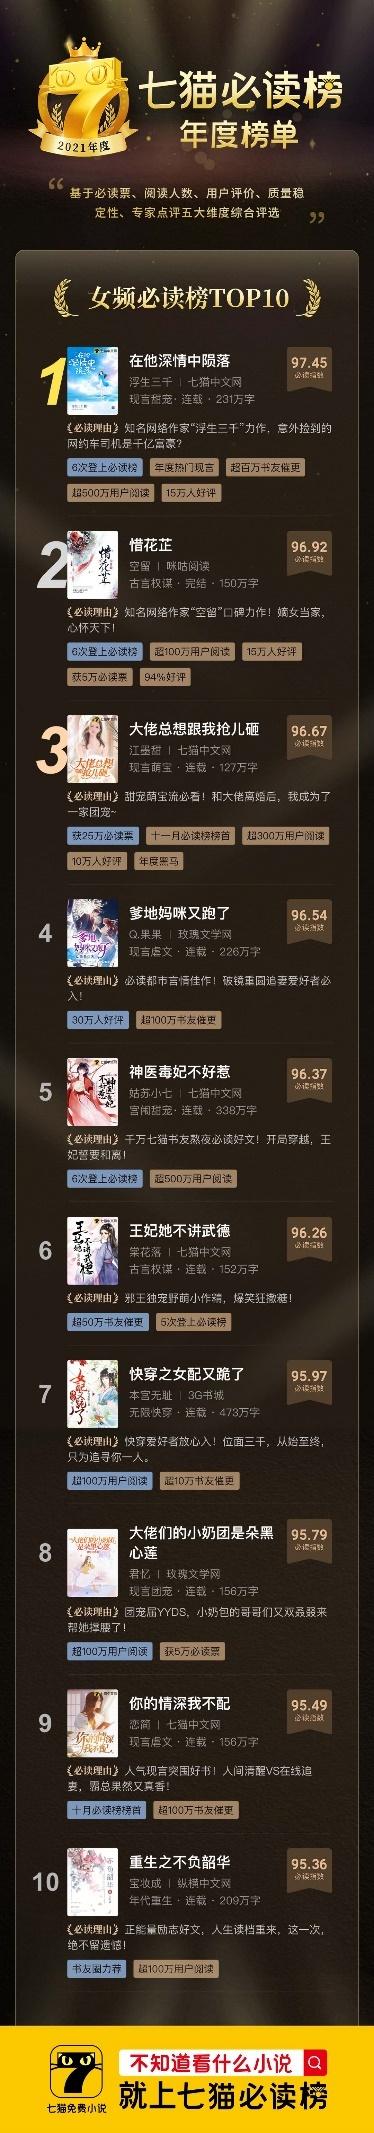 2021言情小说排行榜前十名_言情小说排行榜言情小说排行榜前十名一览